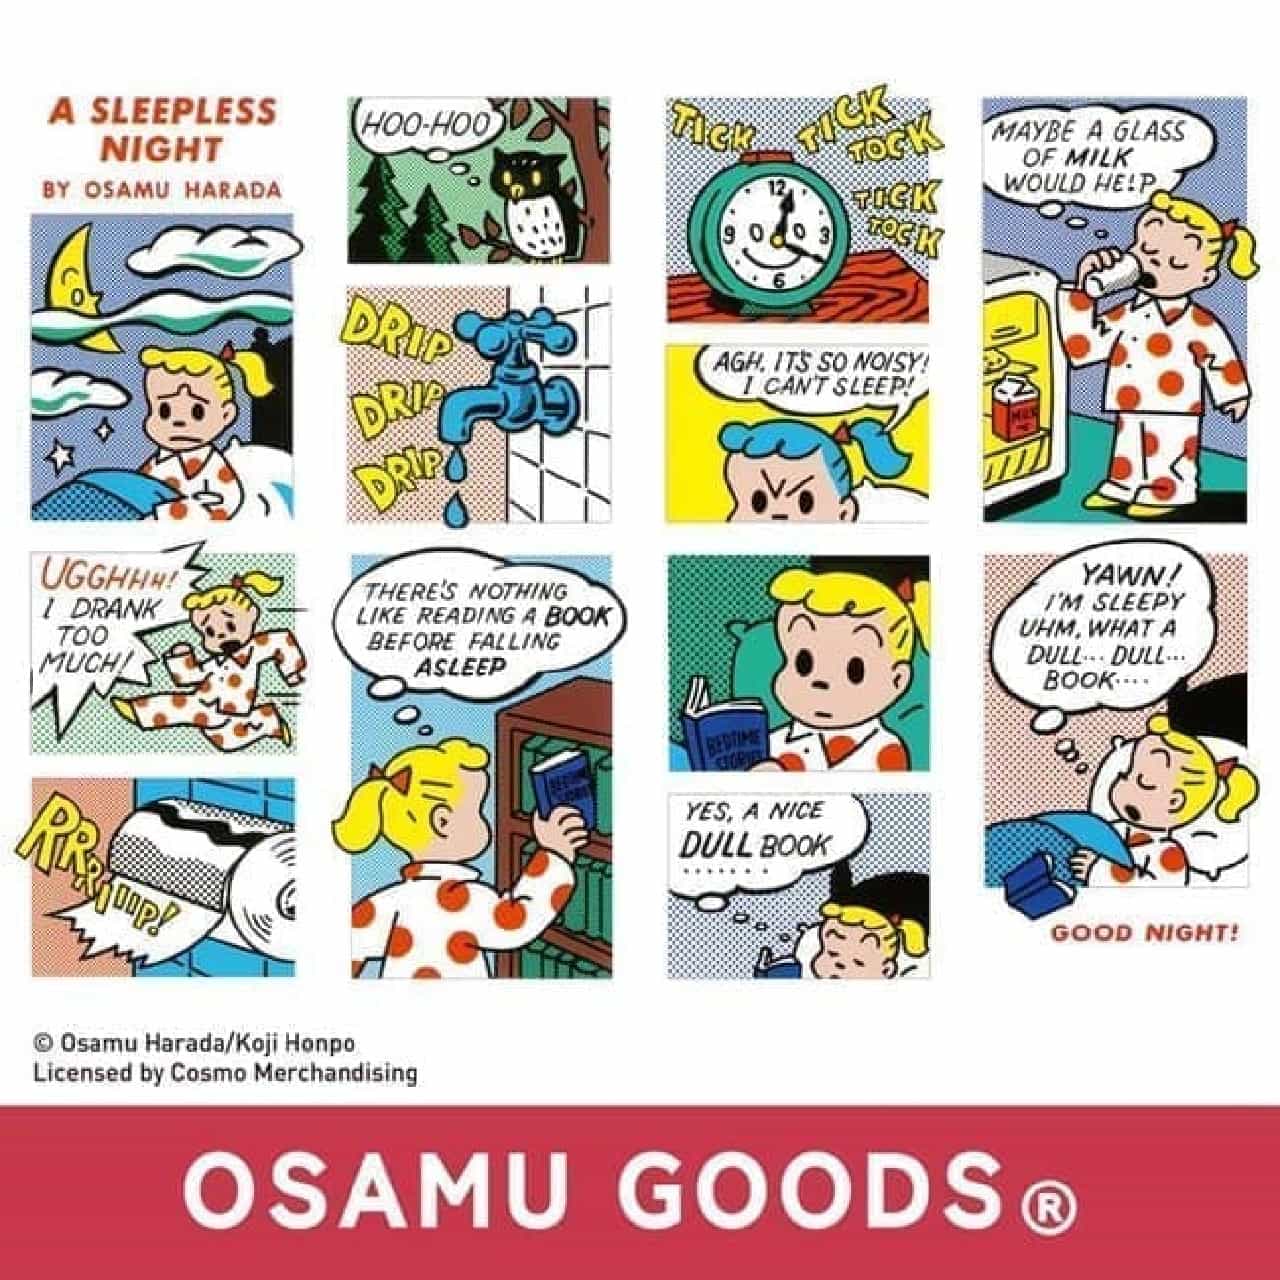 "OSAMU GOODS" stationery 3rd --Retro cassette tape style memo